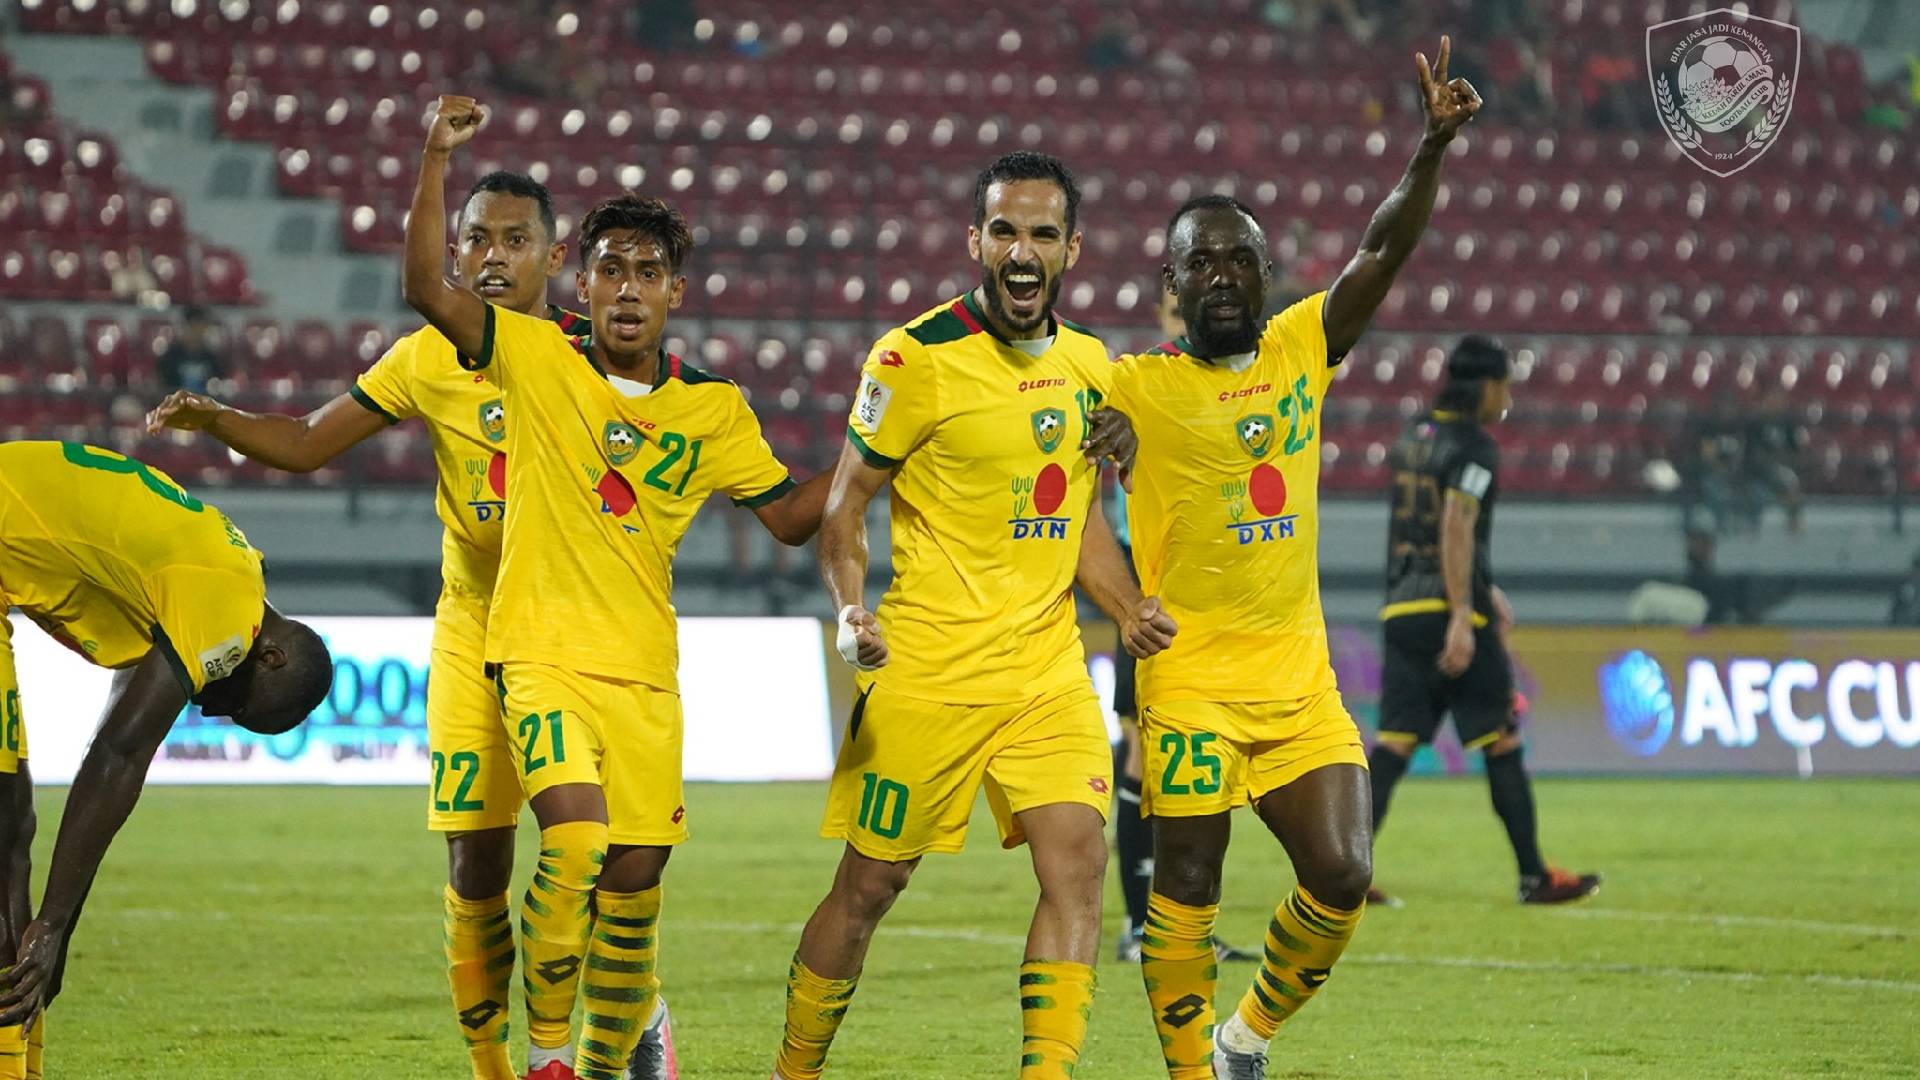 Kedah kaya Piala AFC: Kedah Mengamuk Belasah Kaya